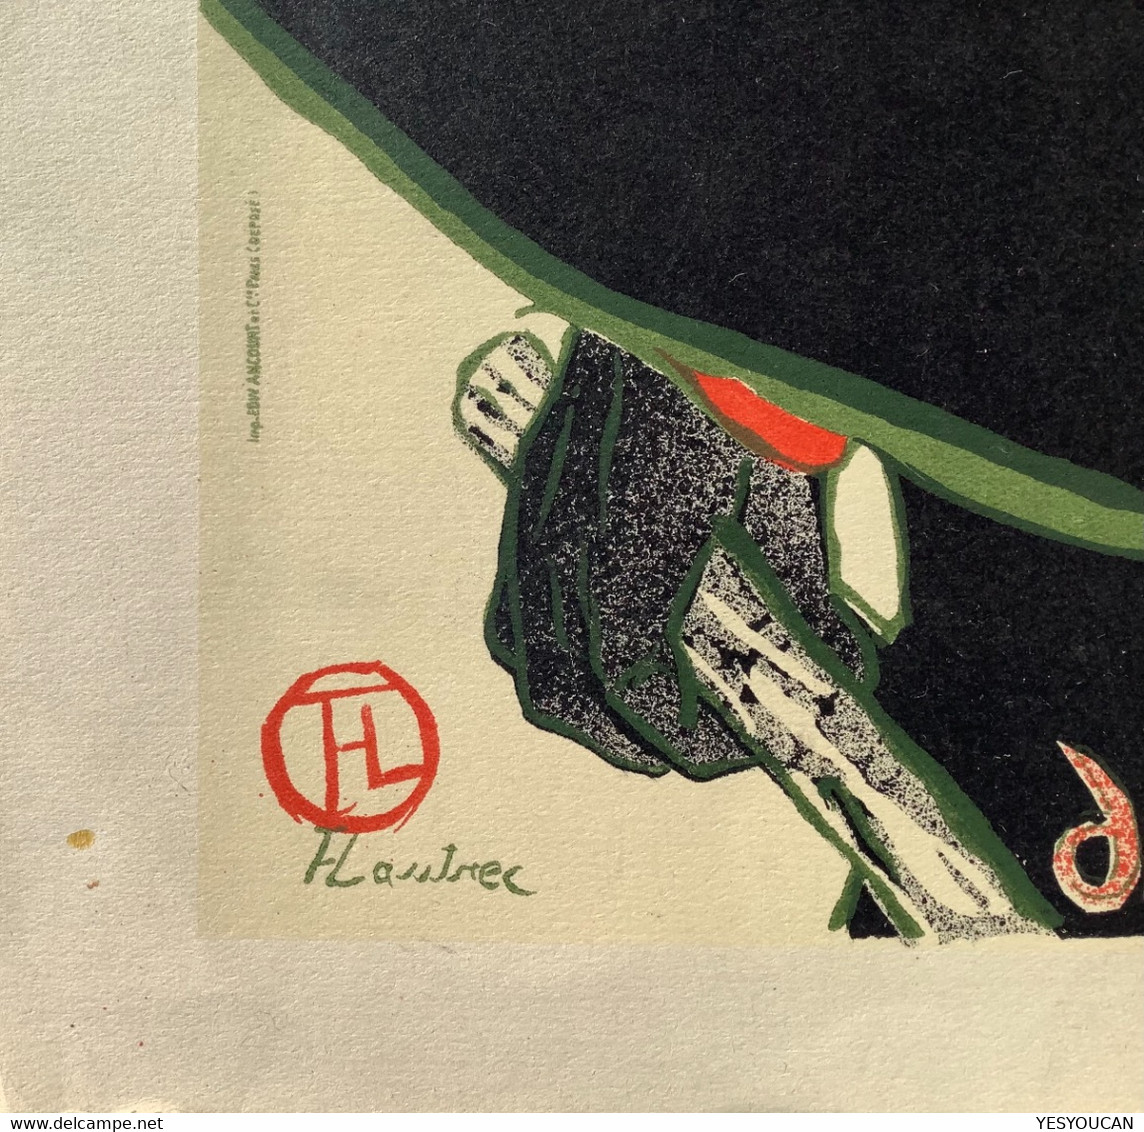 TOULOUSE-LAUTREC: “ARISTIDE BRUANT CABARET (1893)” LITHOGRAPH Vintage~1930-1950th Ex R.G MICHEL, PARIS (lithographie Art - Lithographies